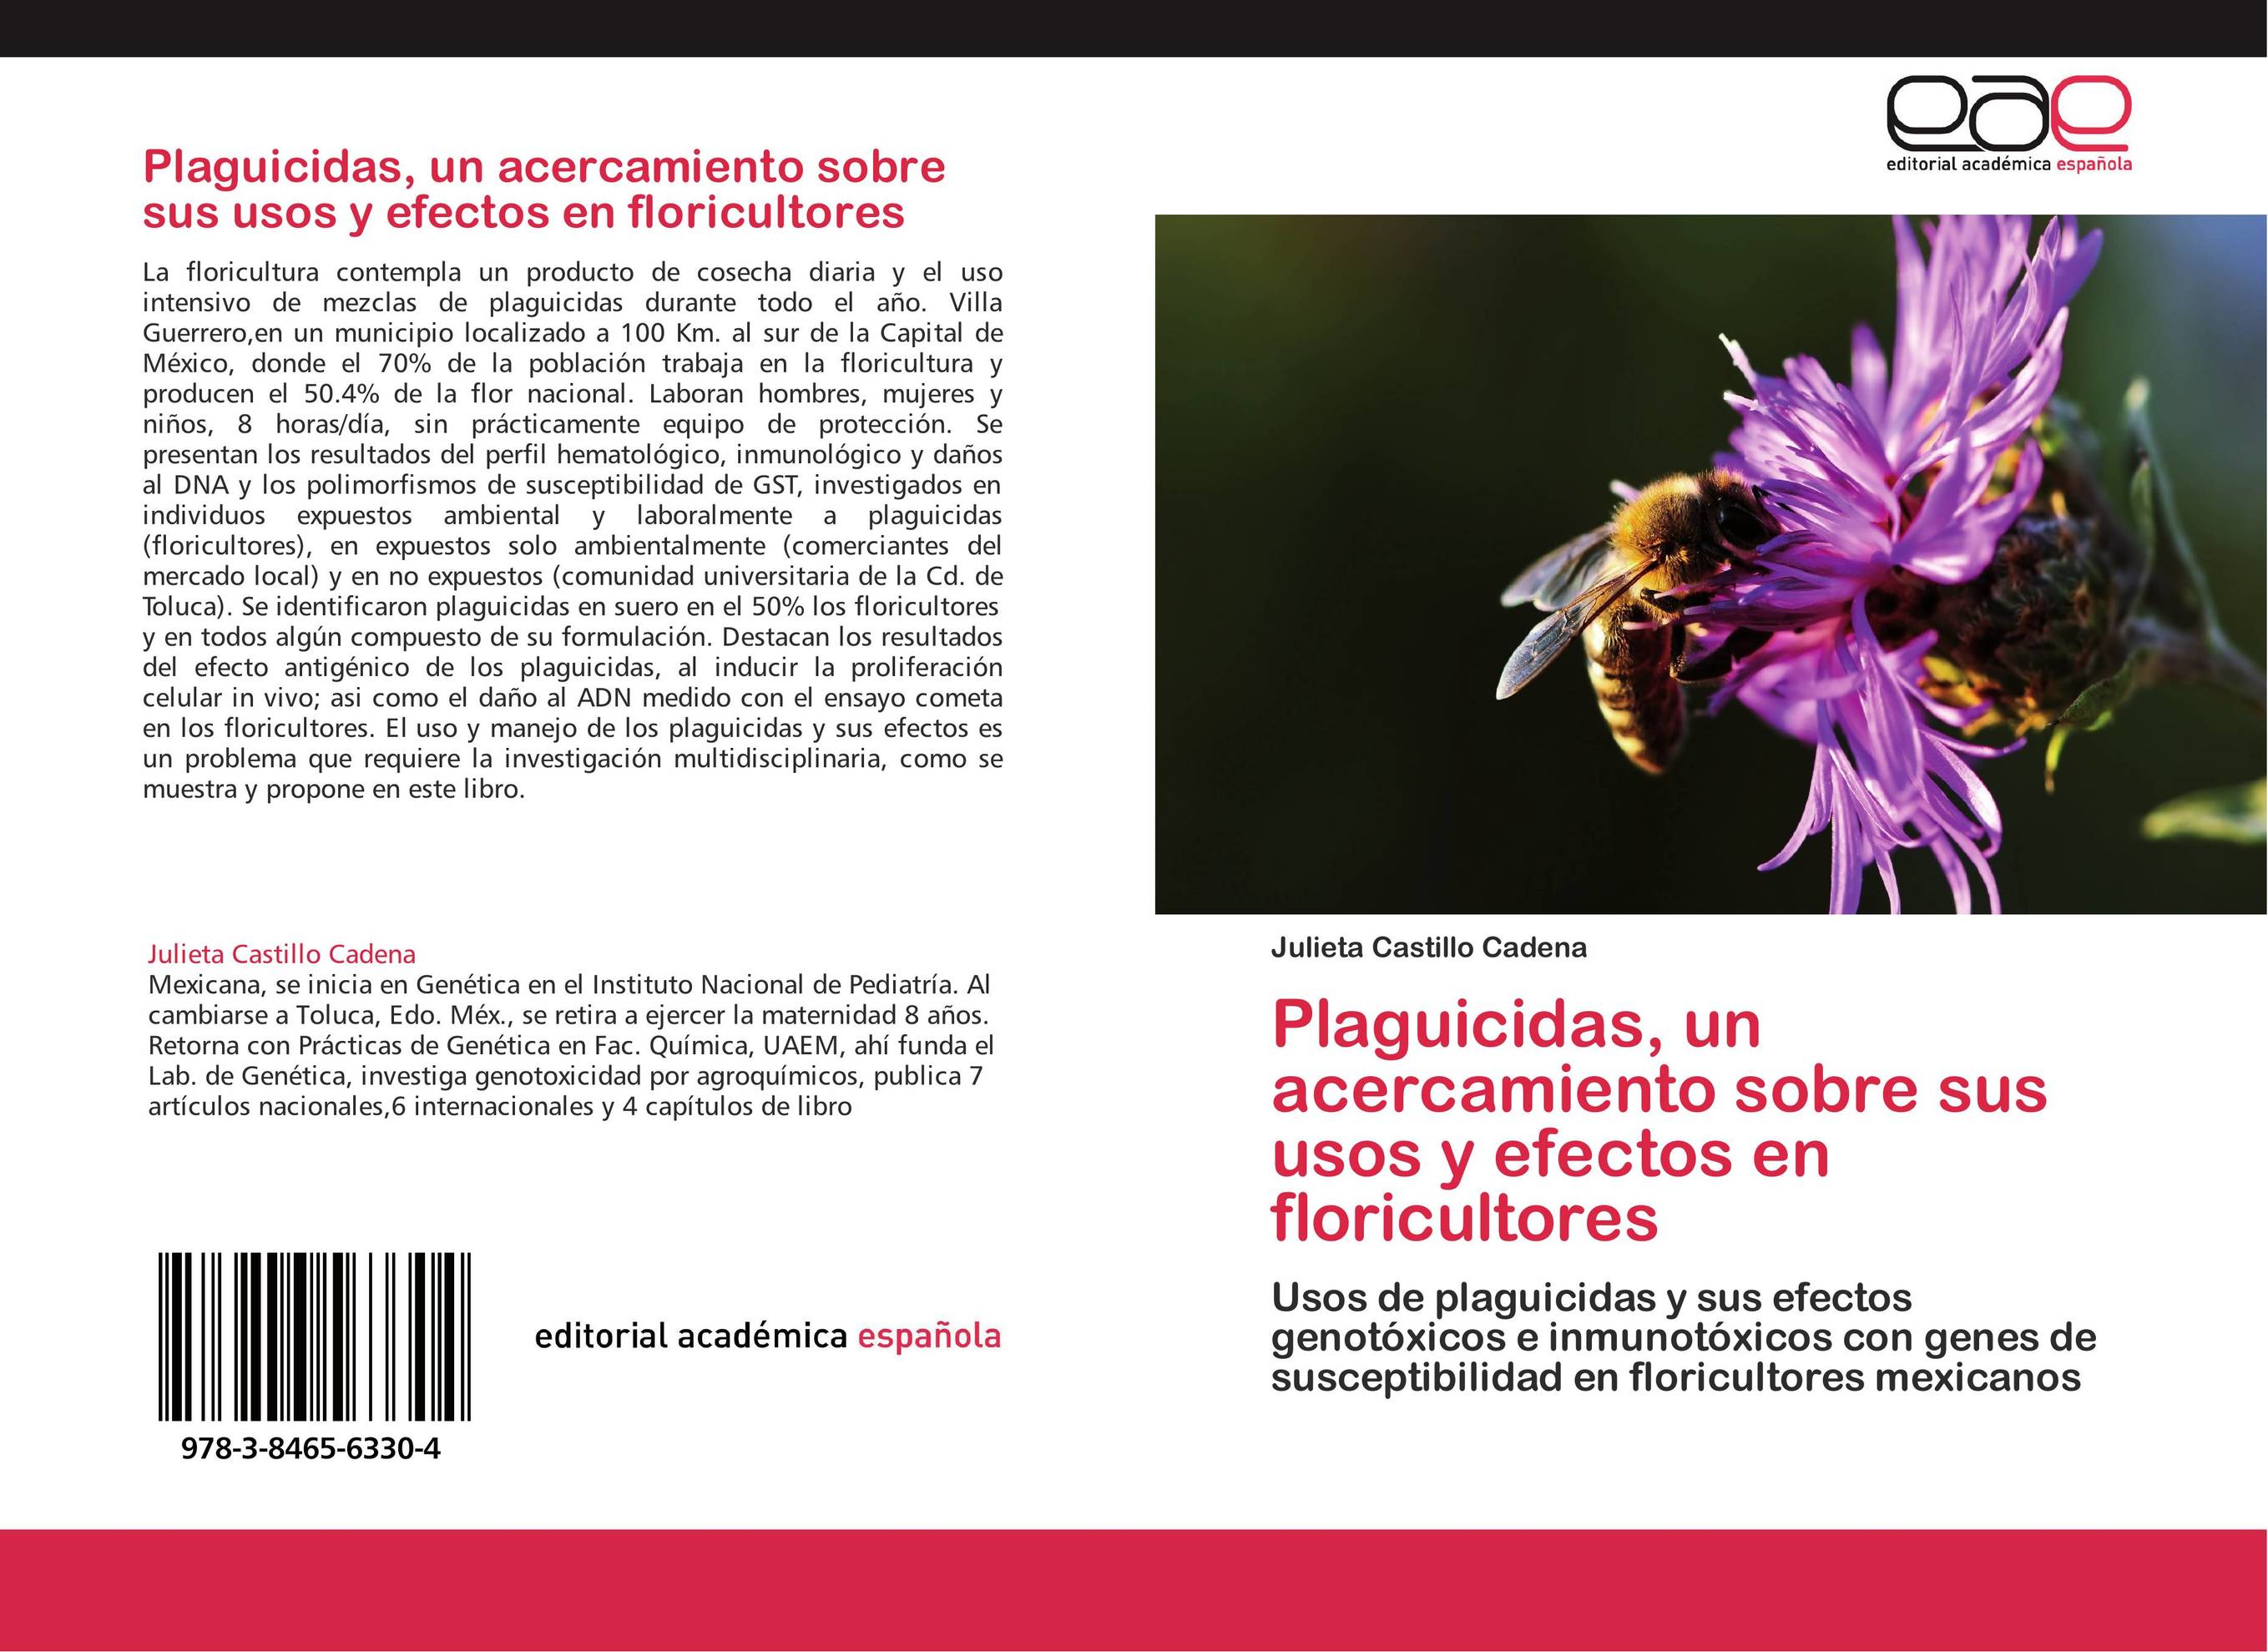 Plaguicidas, un acercamiento sobre sus usos y efectos en floricultores